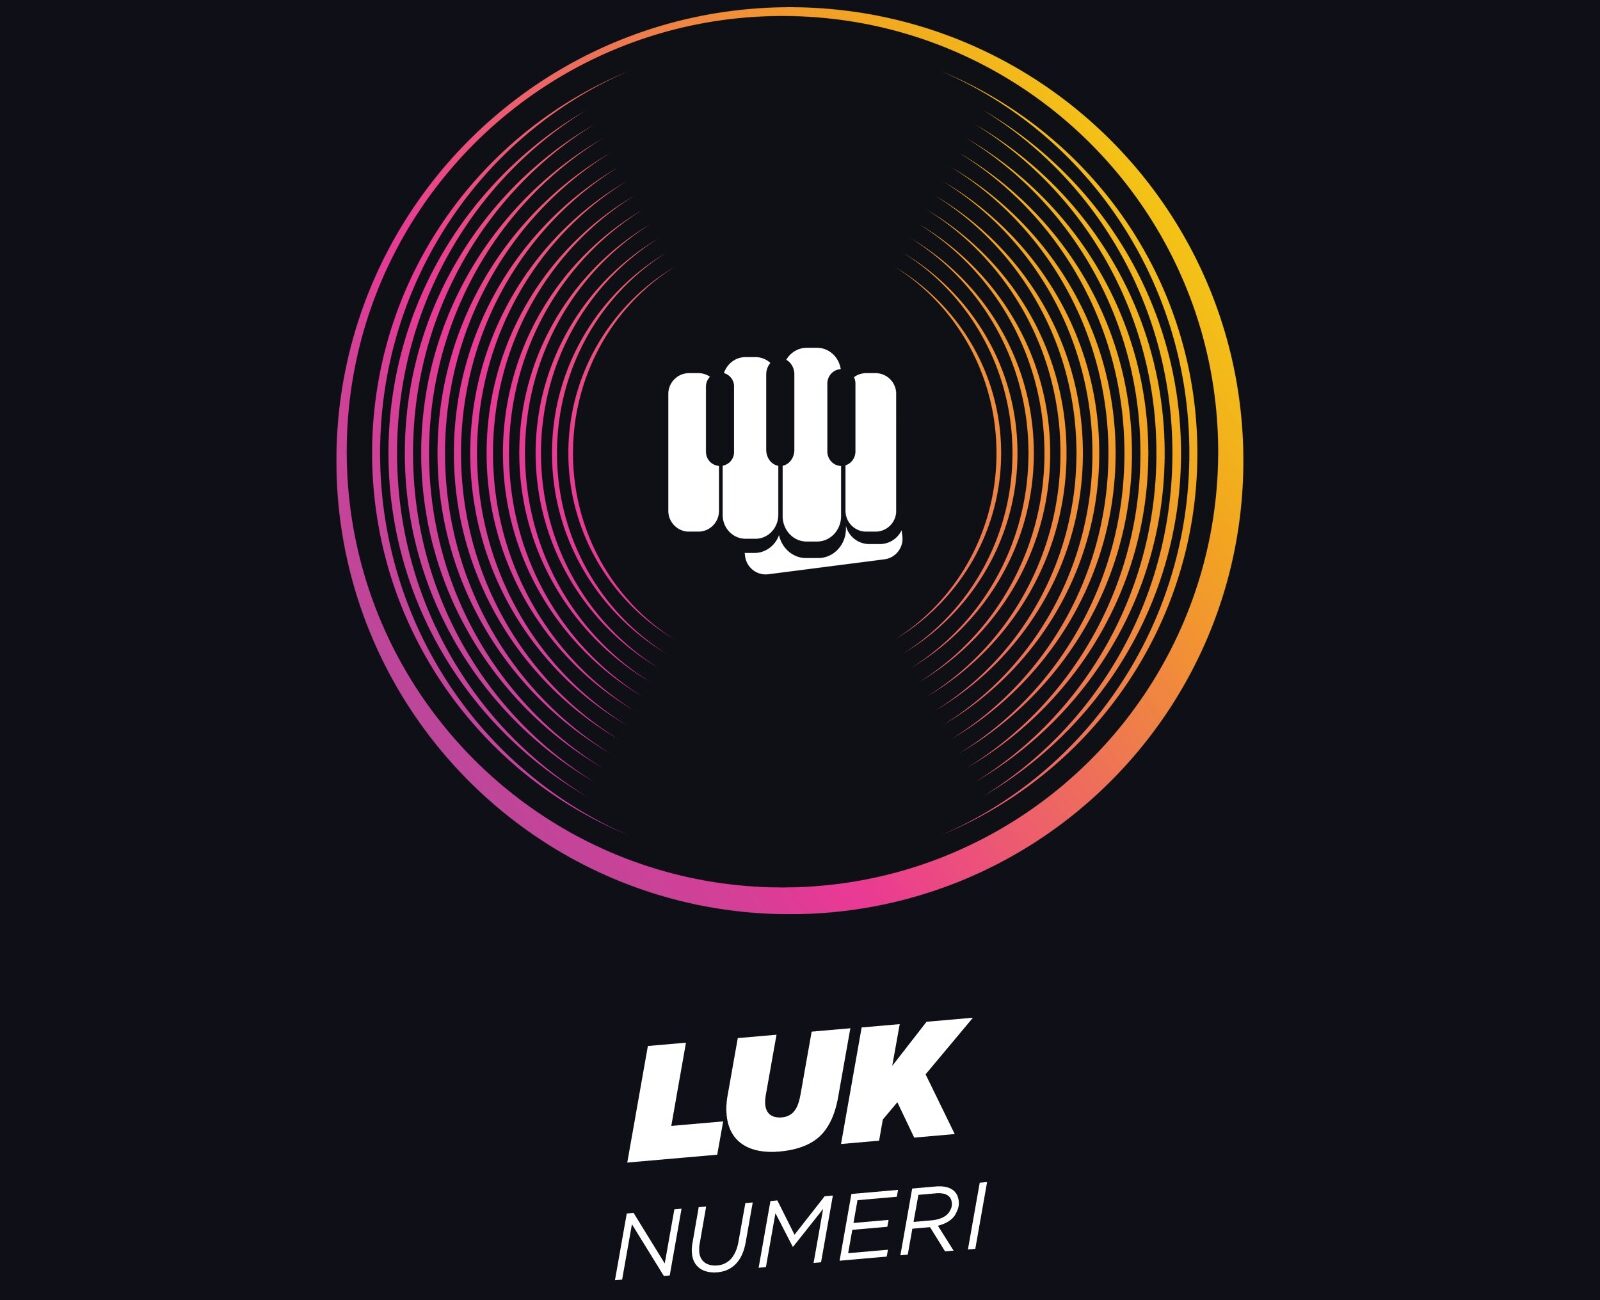 Numeri, il nuovo singolo del cantautore campano LUK